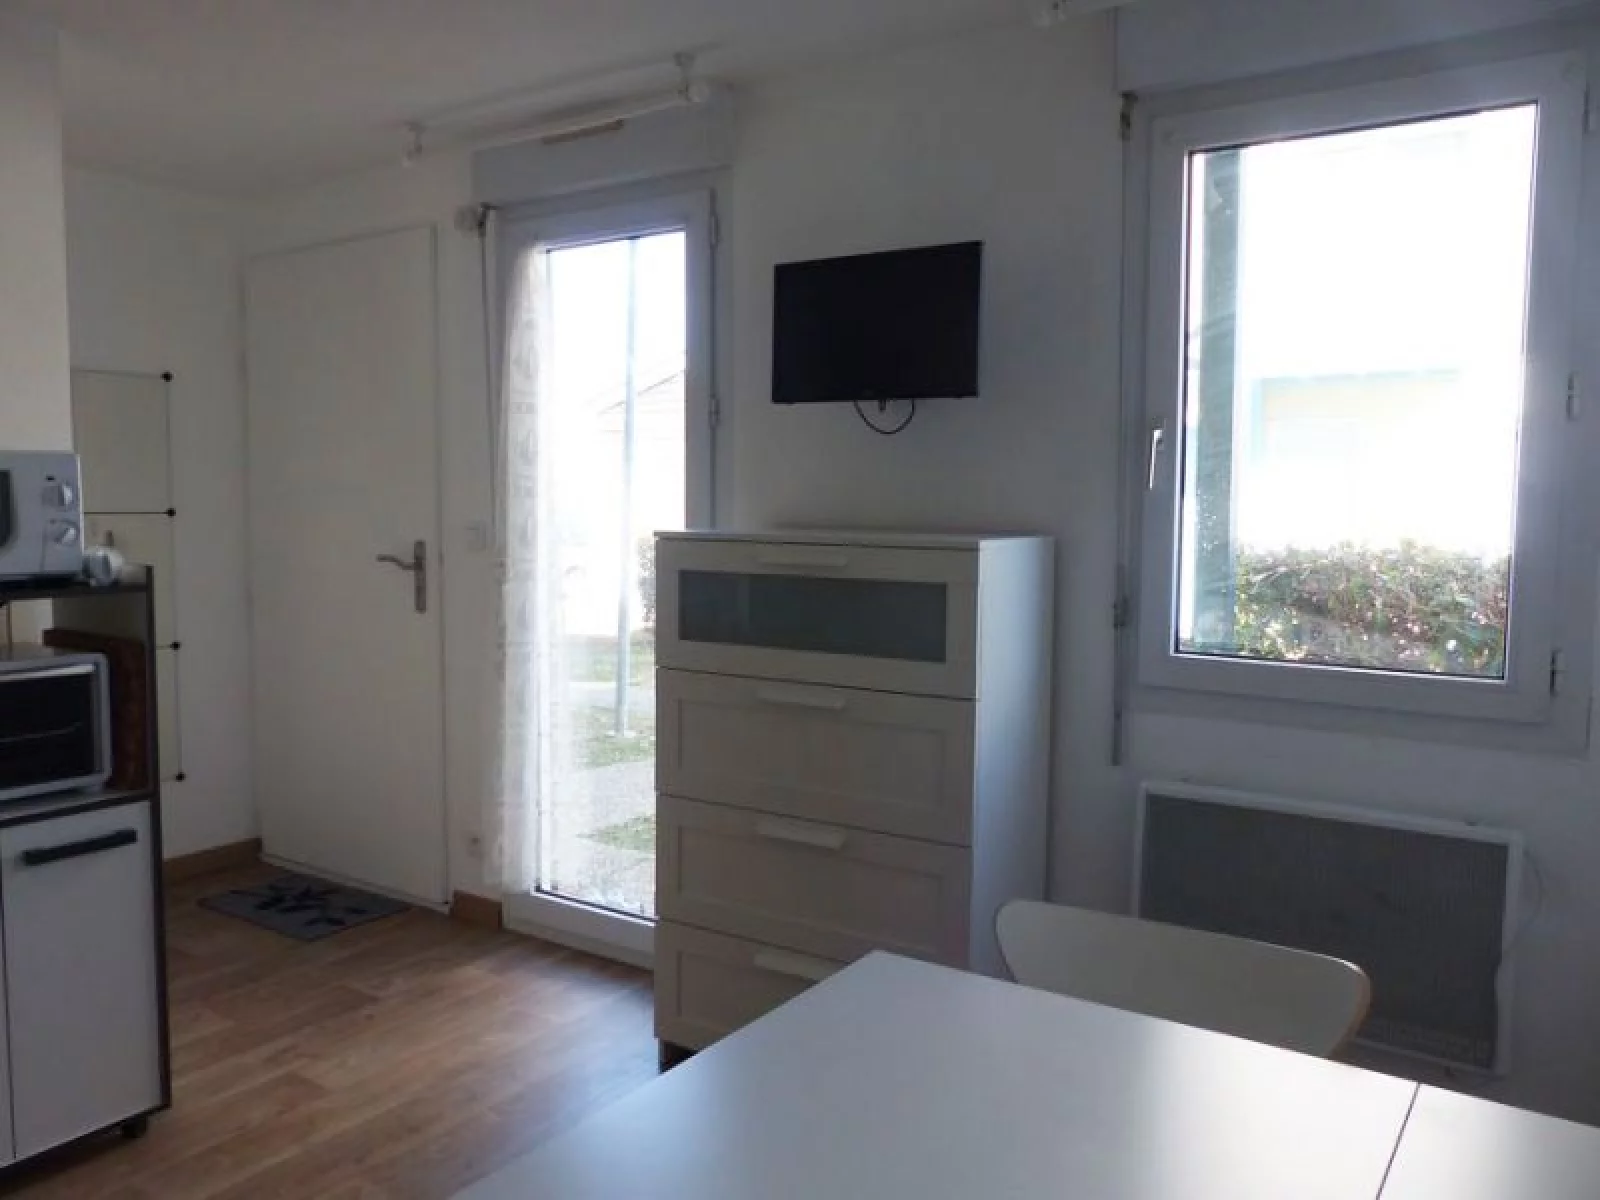 Location studio meublé 20 m² avec parking (La Rochelle)